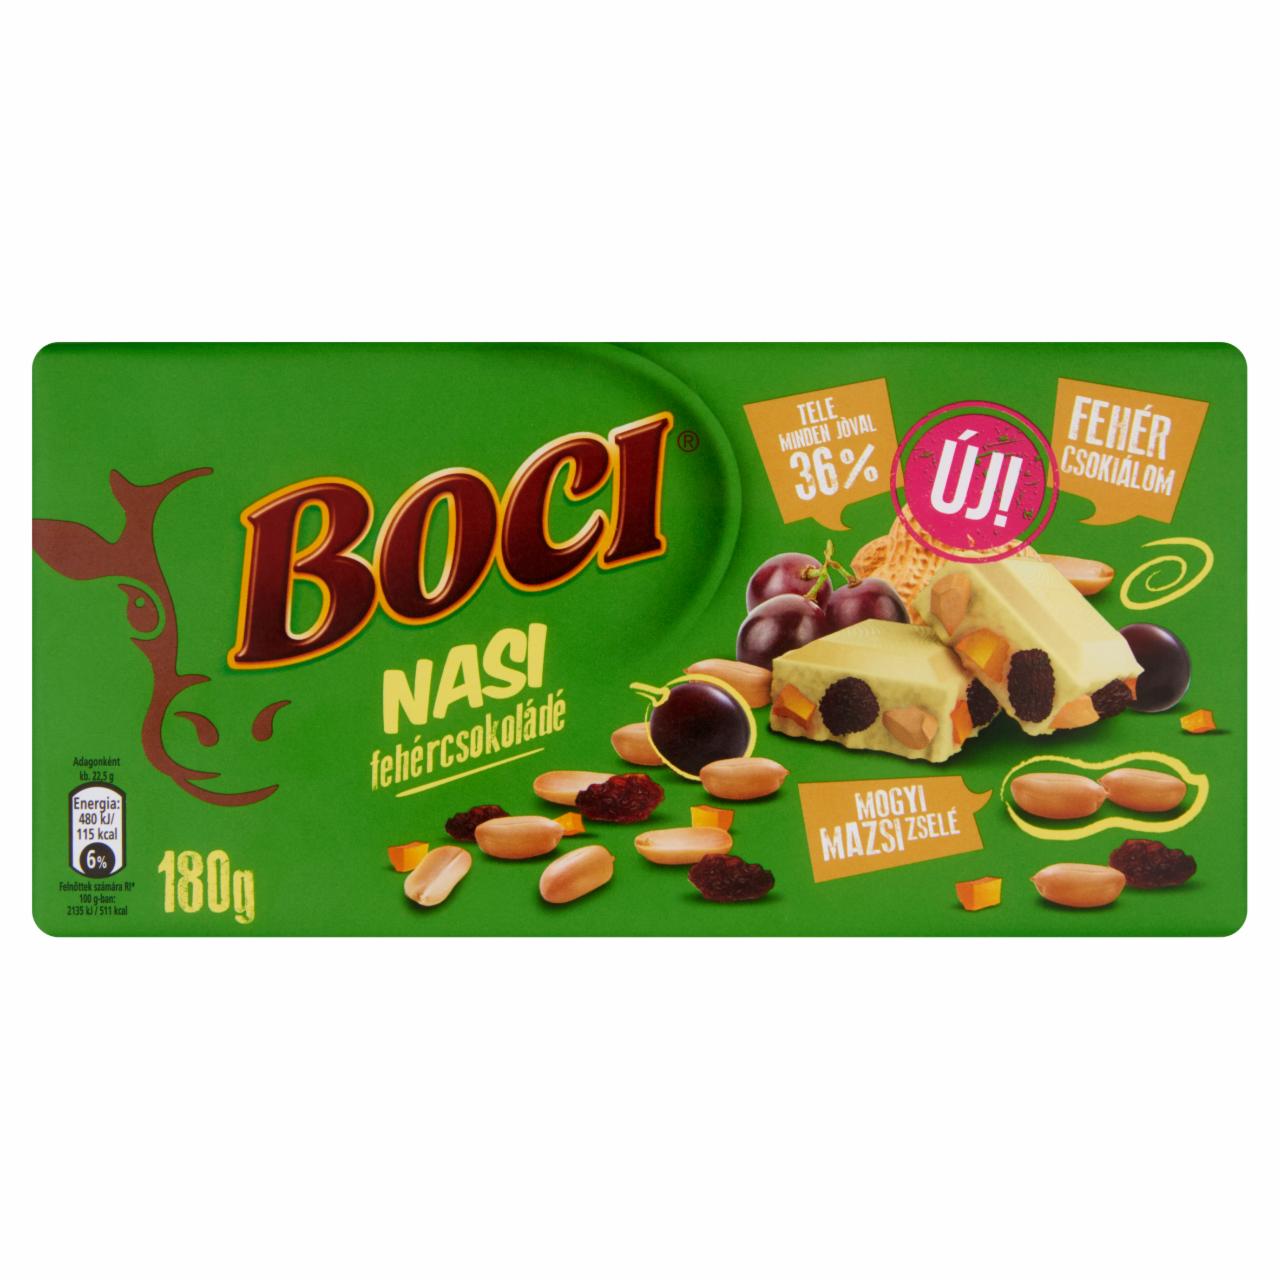 Képek - Boci Nasi fehércsokoládé földimogyoróval, mazsolával és zselével 180 g